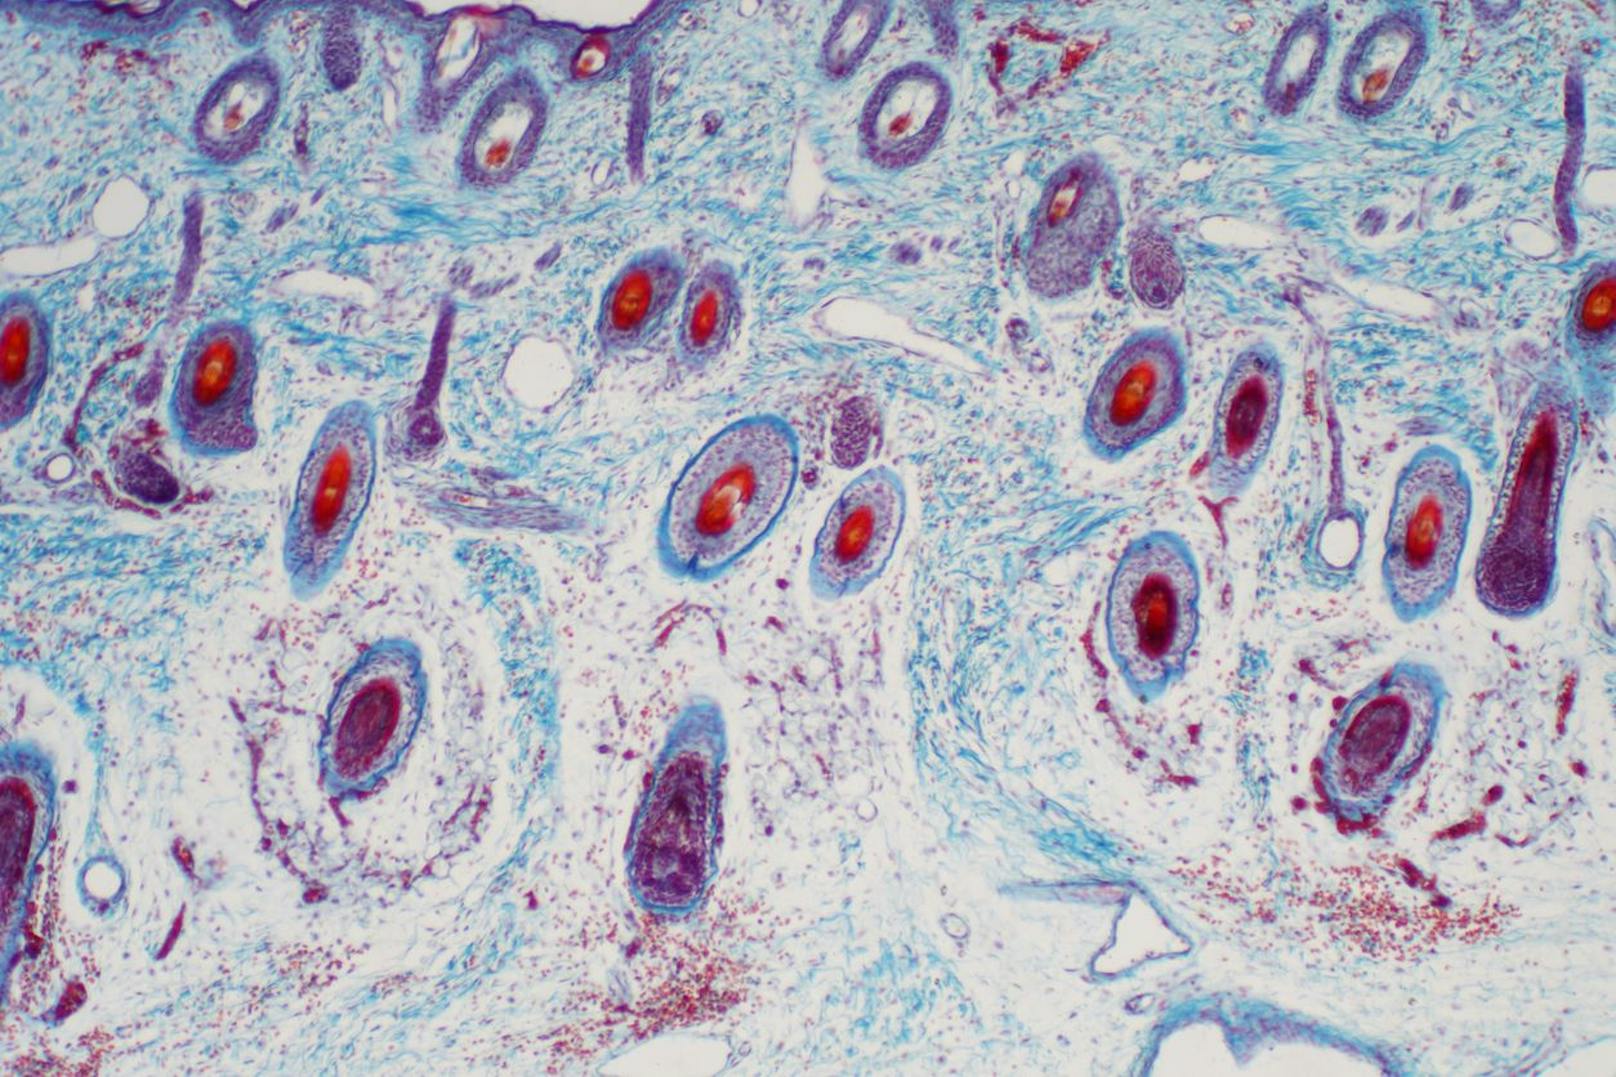 Querschnitt menschlichen Hautgewebes unter dem Mikroskop (Bild).